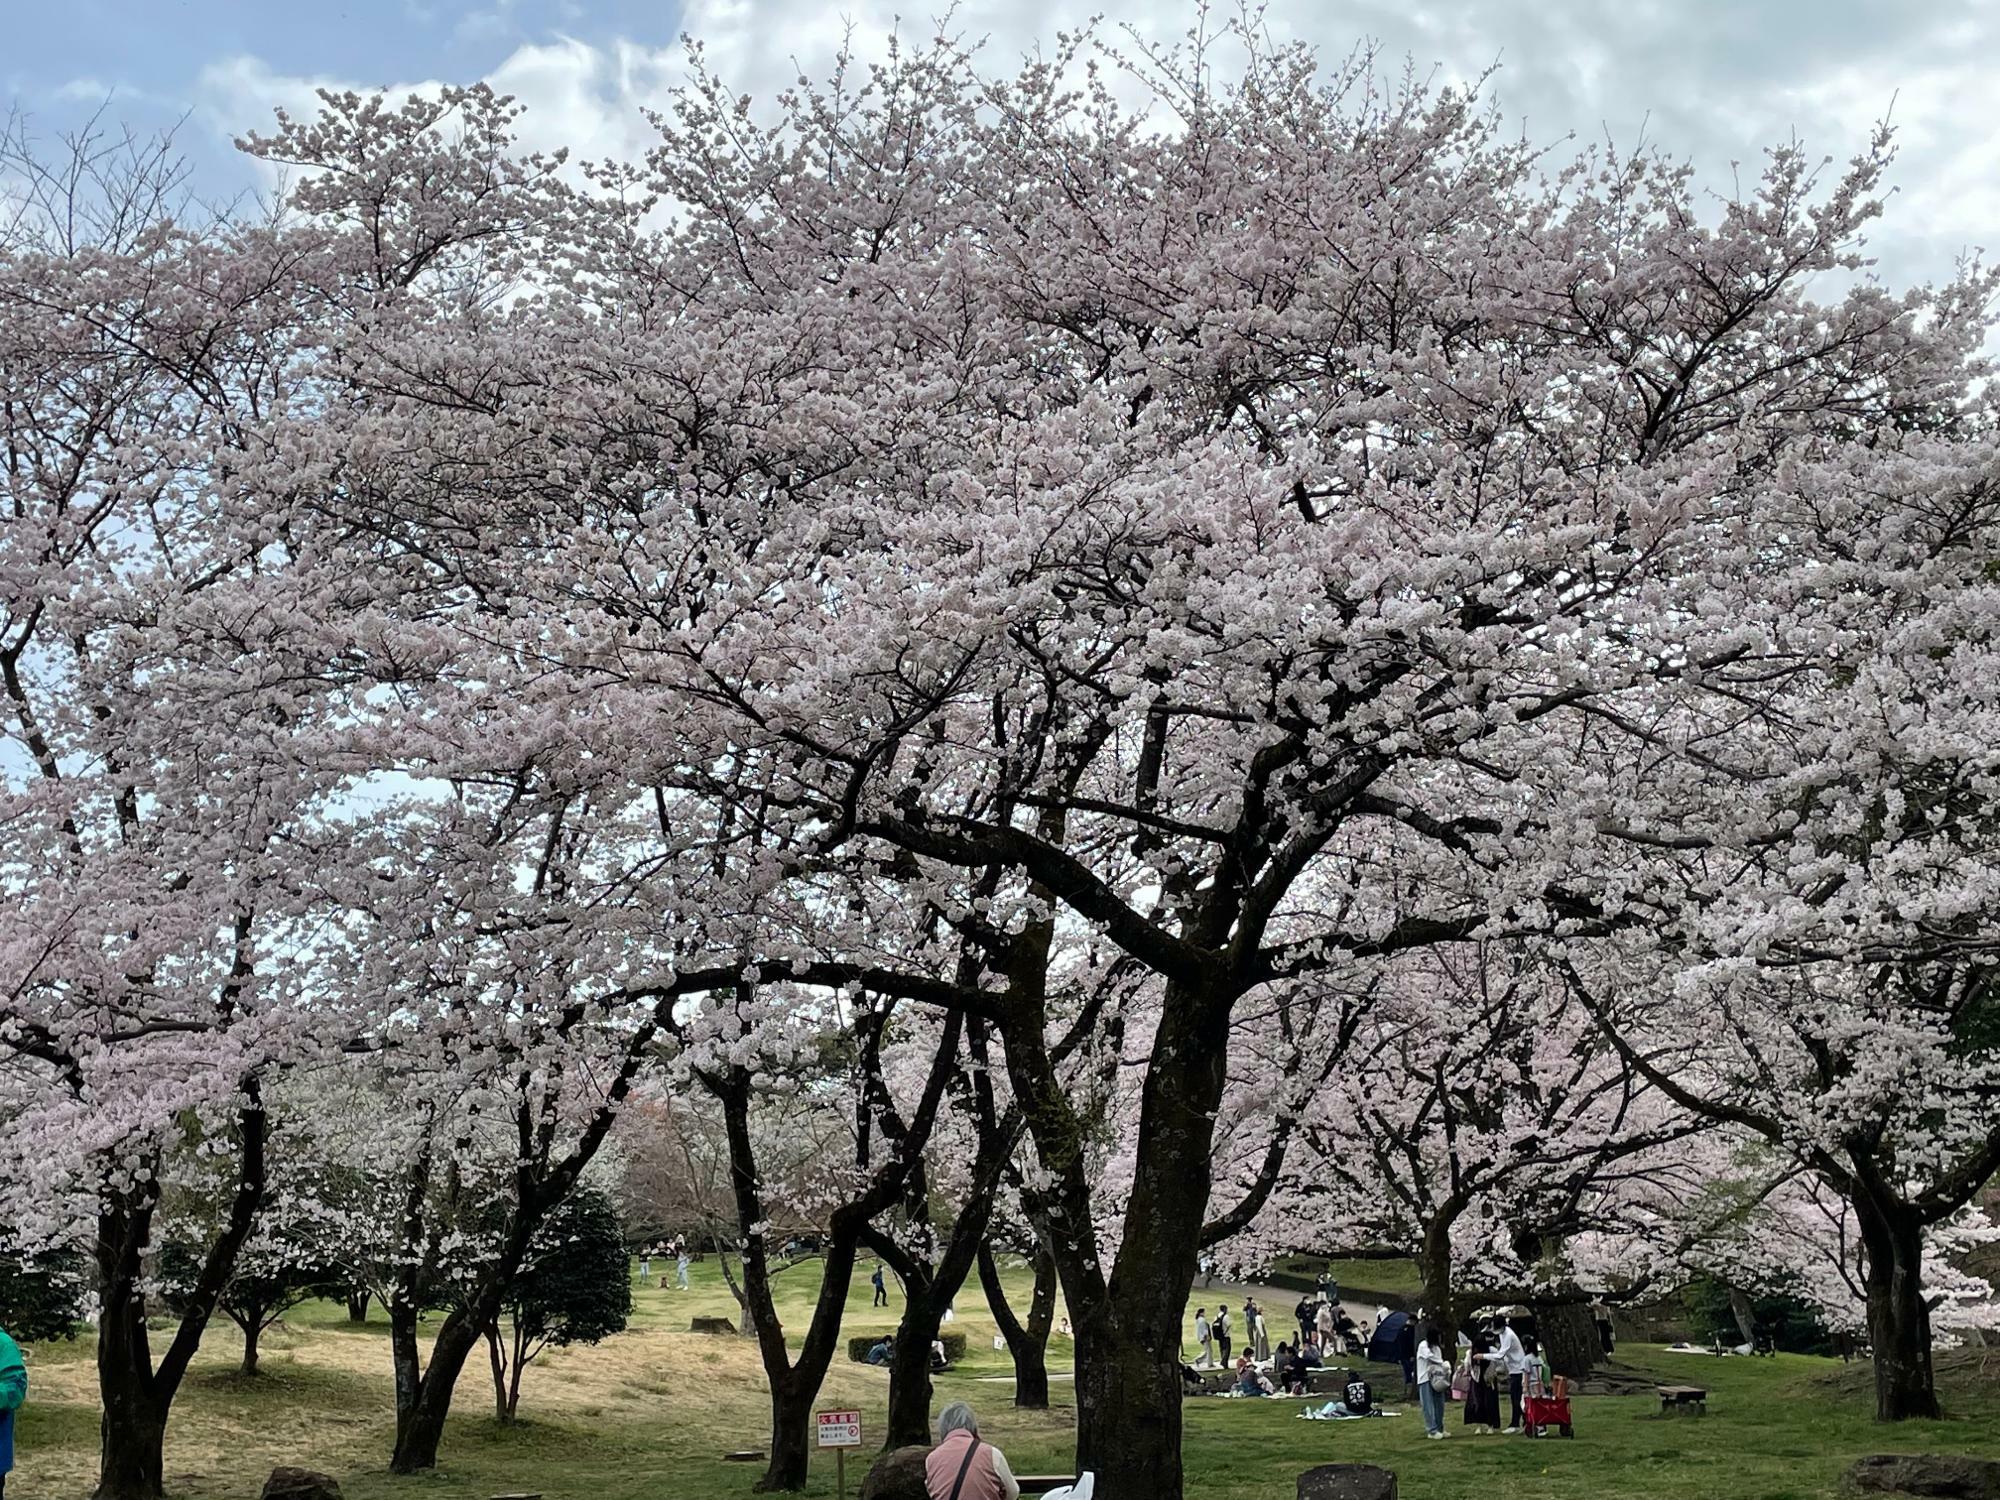 桜の下では笑顔があふれています